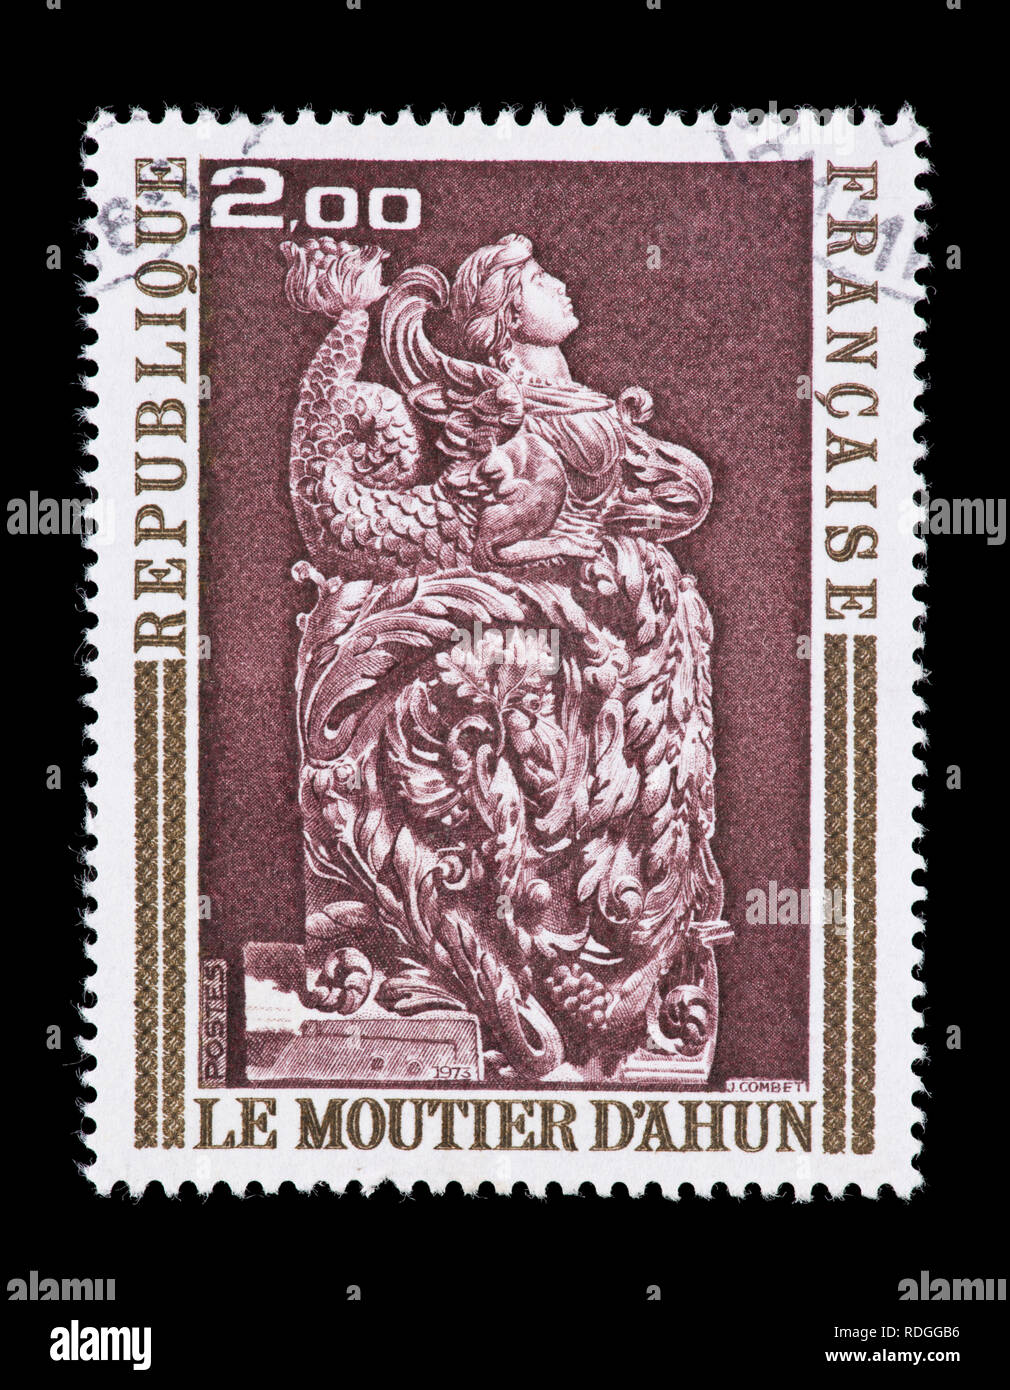 Briefmarke aus Frankreich mit der Darstellung der Ahun holz skulptur Engel Stockfoto